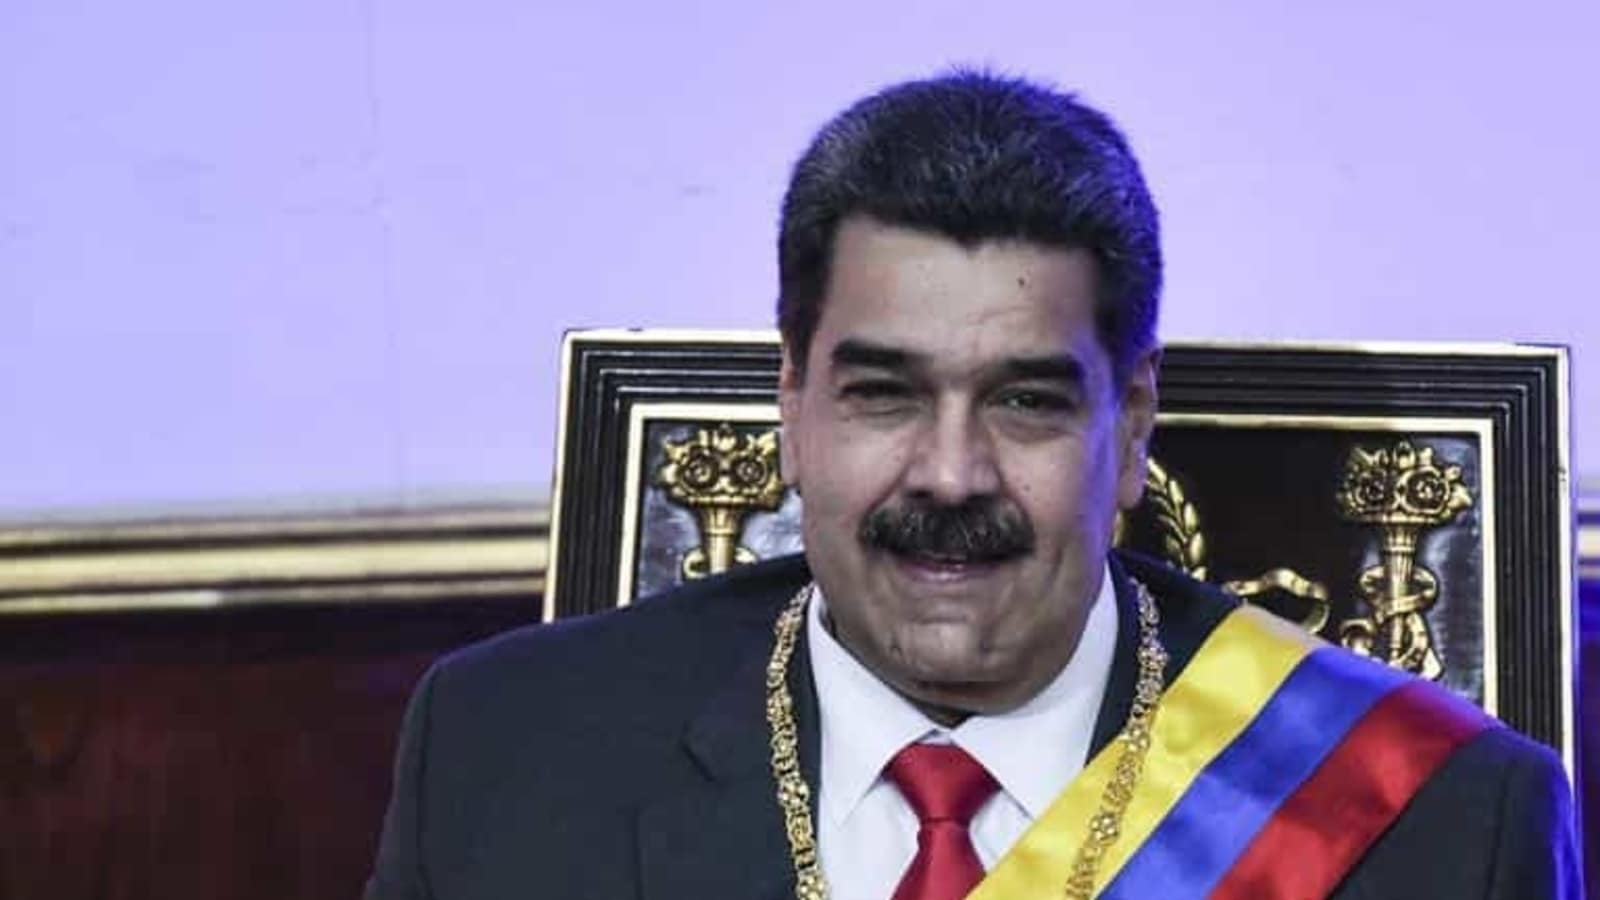 El empresario colombiano, colaborador del venezolano Maduro, corre el riesgo de ser extraditado a Estados Unidos |  noticias del mundo